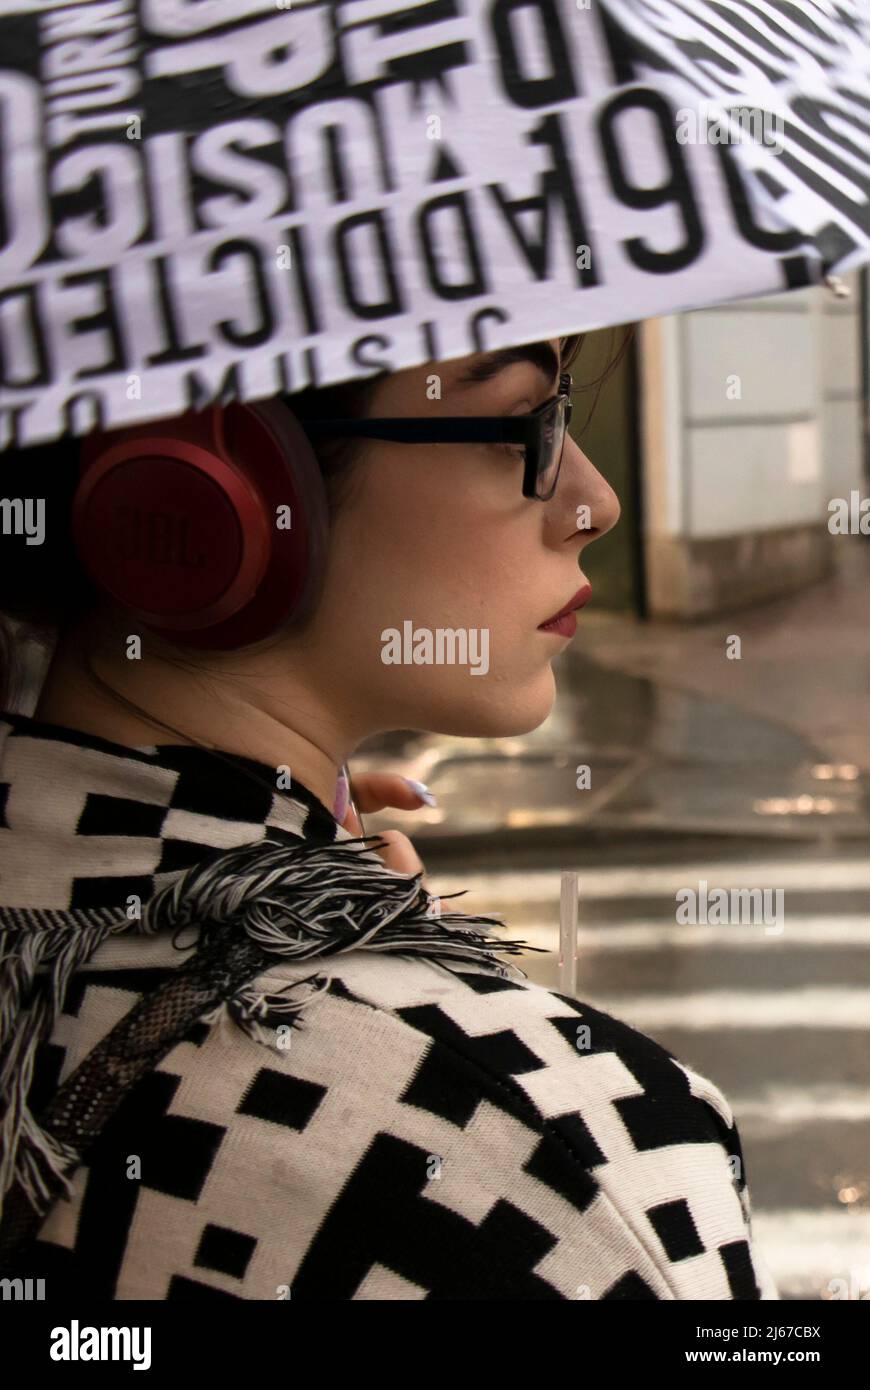 Belgrad, Serbien - 27. April 2022: Junge Frau im schwarz-weißen Muster-Outfit mit roten Kopfhörern, rotem Lippenstift und Brillen unter Regenschirm Stockfoto